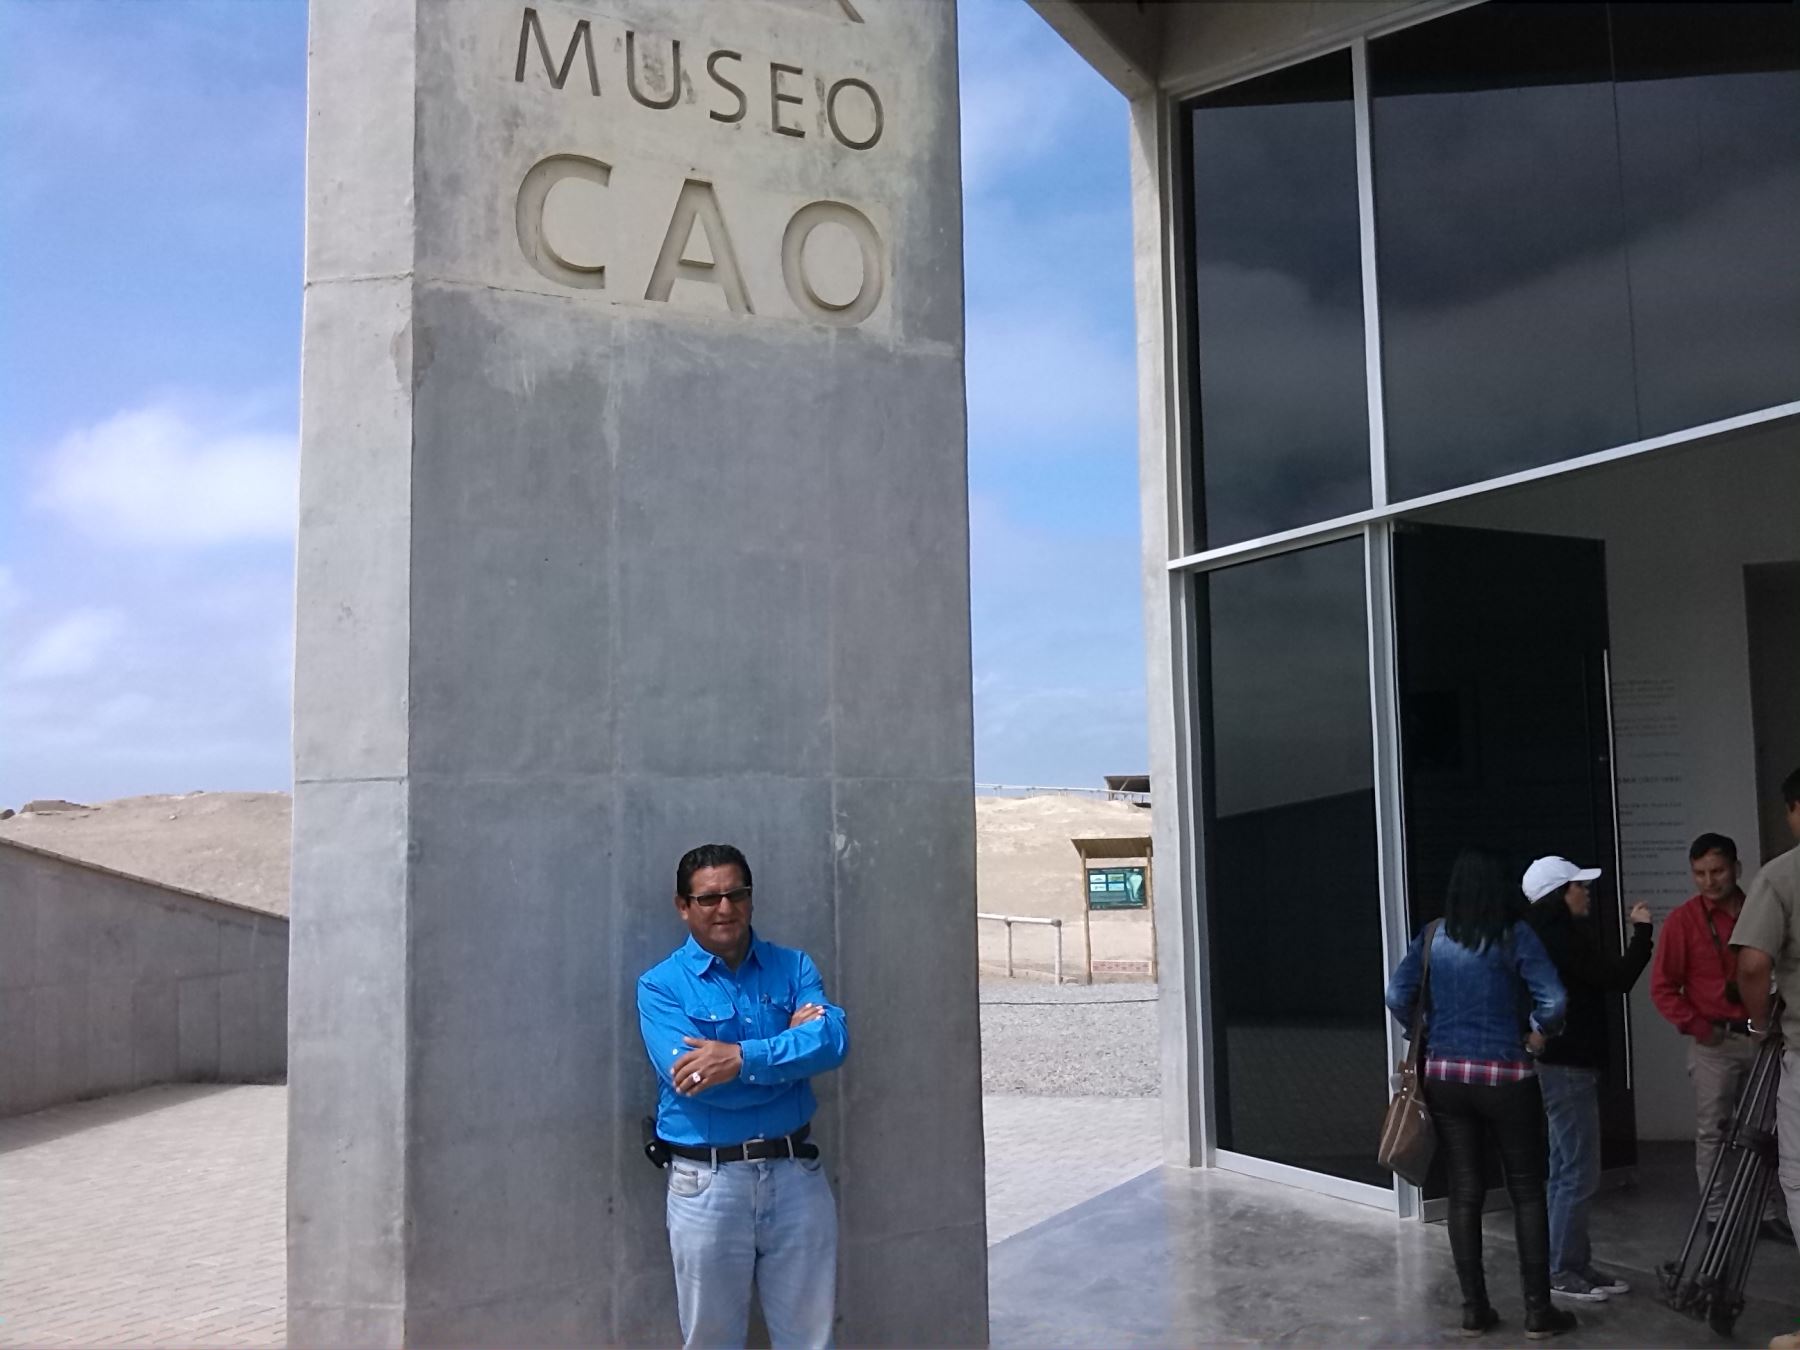 Arqueólogo Régulo Franco Jordán, director del Museo de Cao y del complejo arqueológico El Brujo, donde fue encontrada la tumba de la Señora de Cao. Foto: Luis Zuta